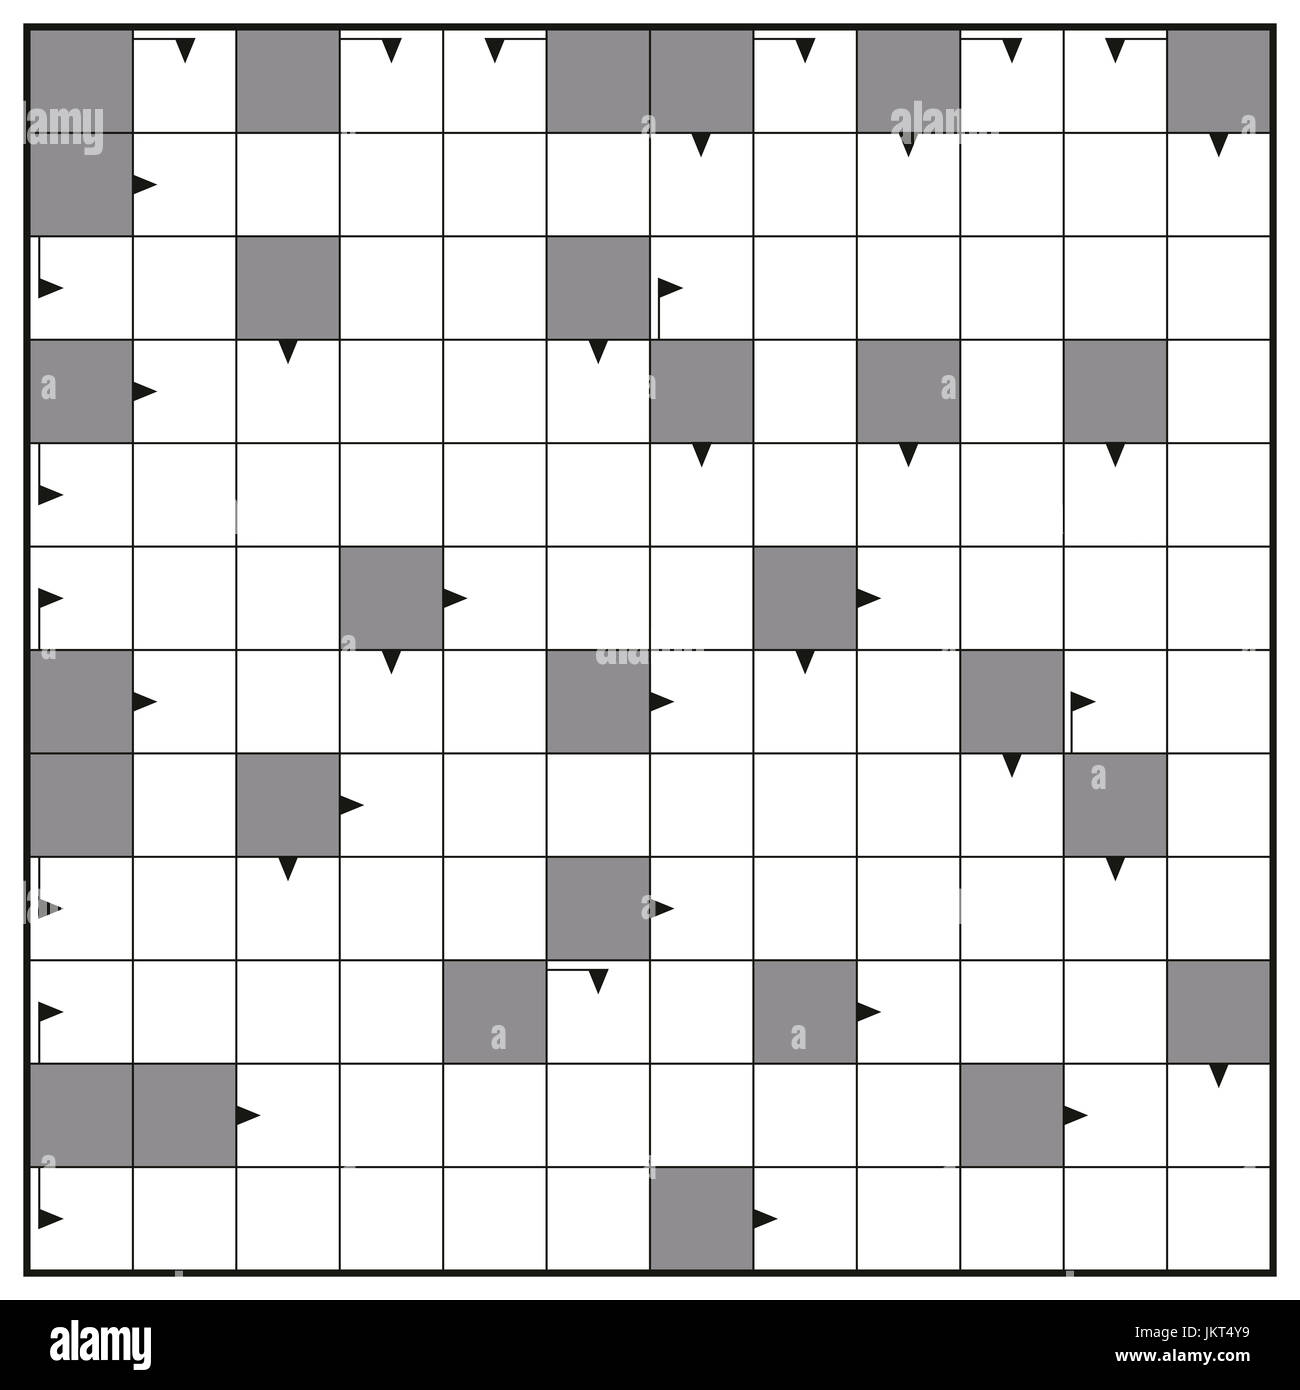 Il Cruciverba - vuoto cruciverba pattern, formato quadrato modello, inserire eventuali parole con uno a dodici lettere per un chiaro messaggio. Foto Stock